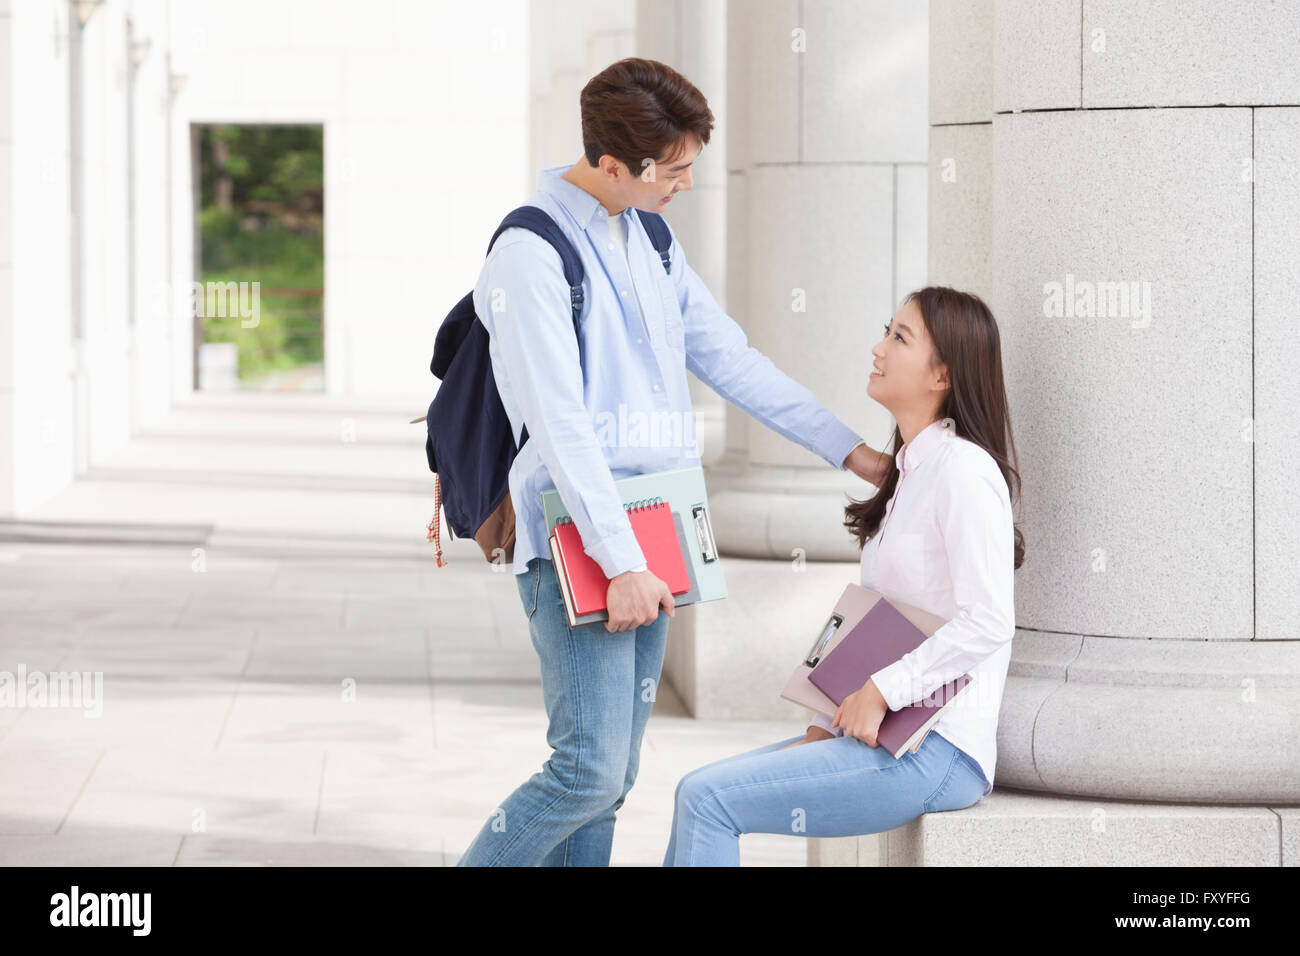 College girl seduti a una colonna dell'edificio del campus e guardando un college boy in piedi accanto a lei con i libri nelle sue mani Foto Stock